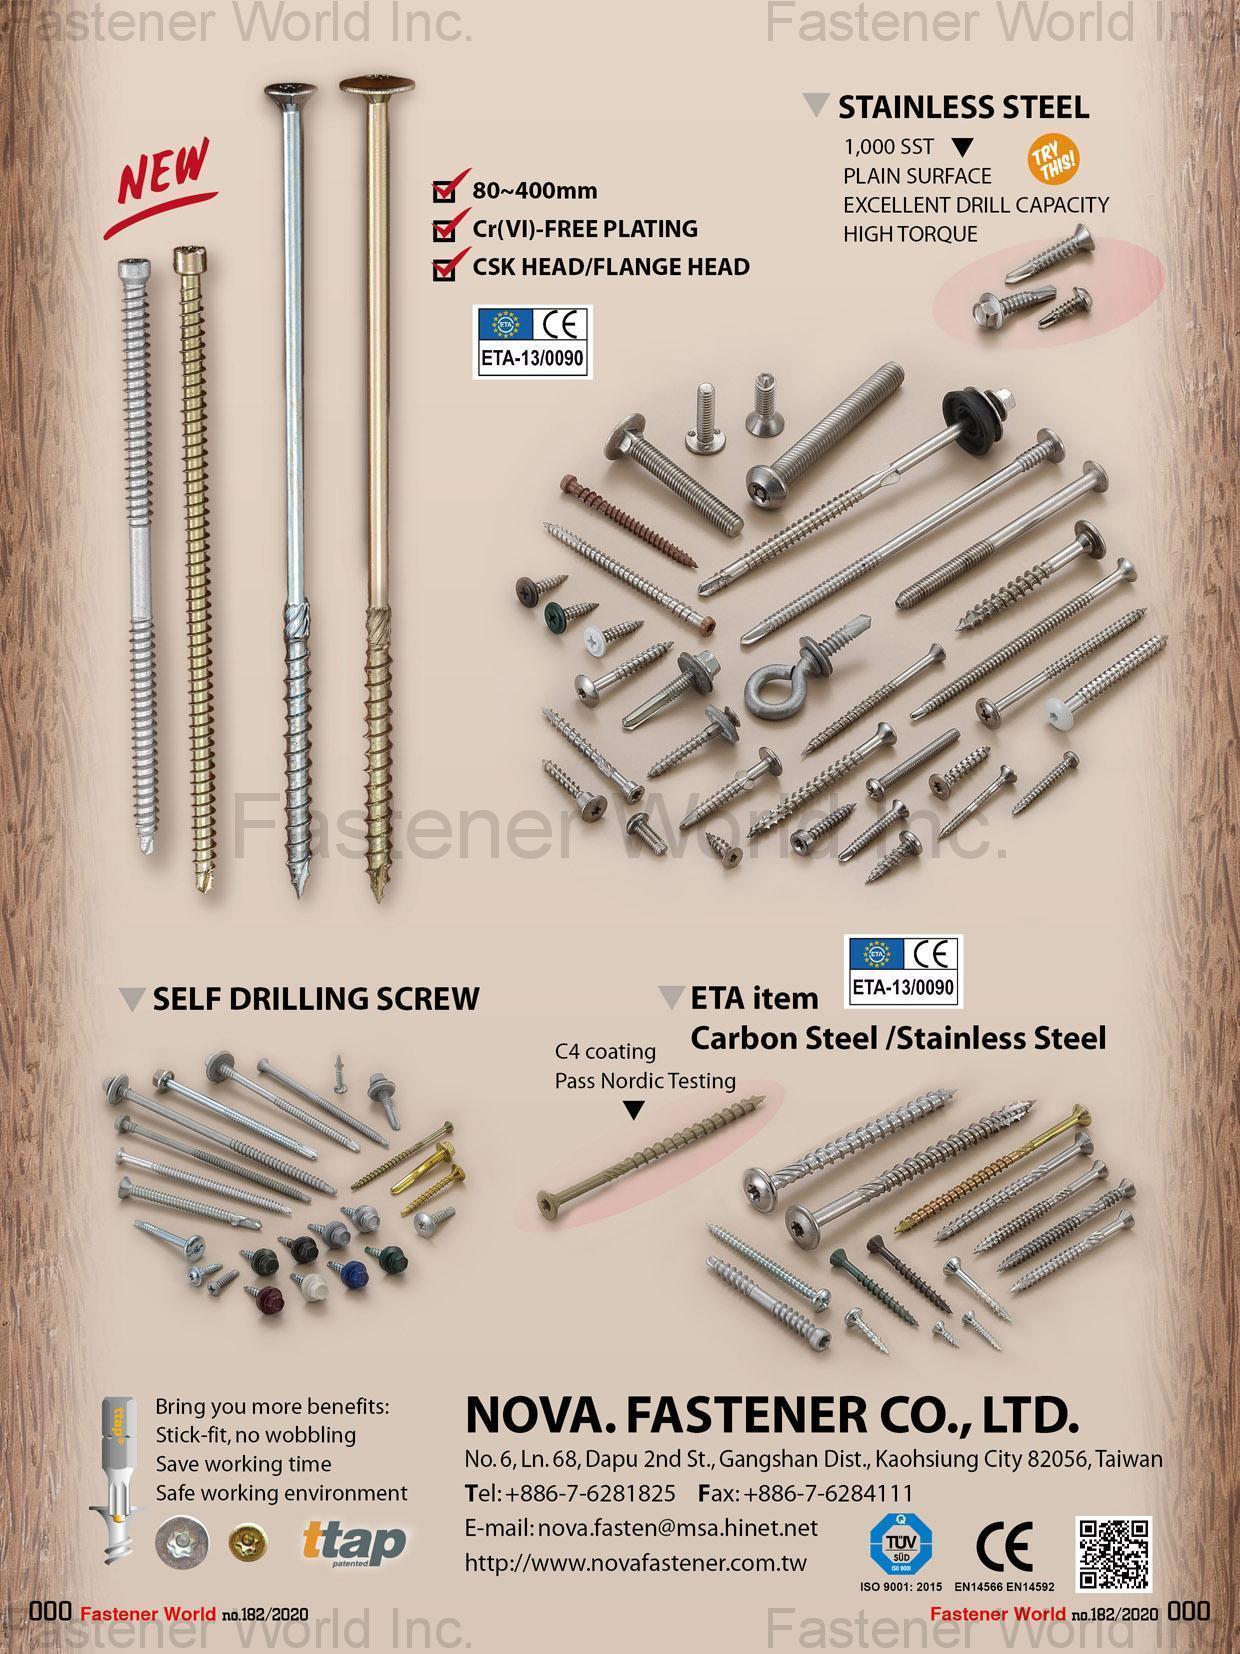 NOVA. FASTENER CO., LTD.  , Stainless Steel Screws, Self Drilling Screws, ETA item (Carbon Steel/Stainless Steel), C4 coating Pass Nordic Testing , Self-drilling Screws